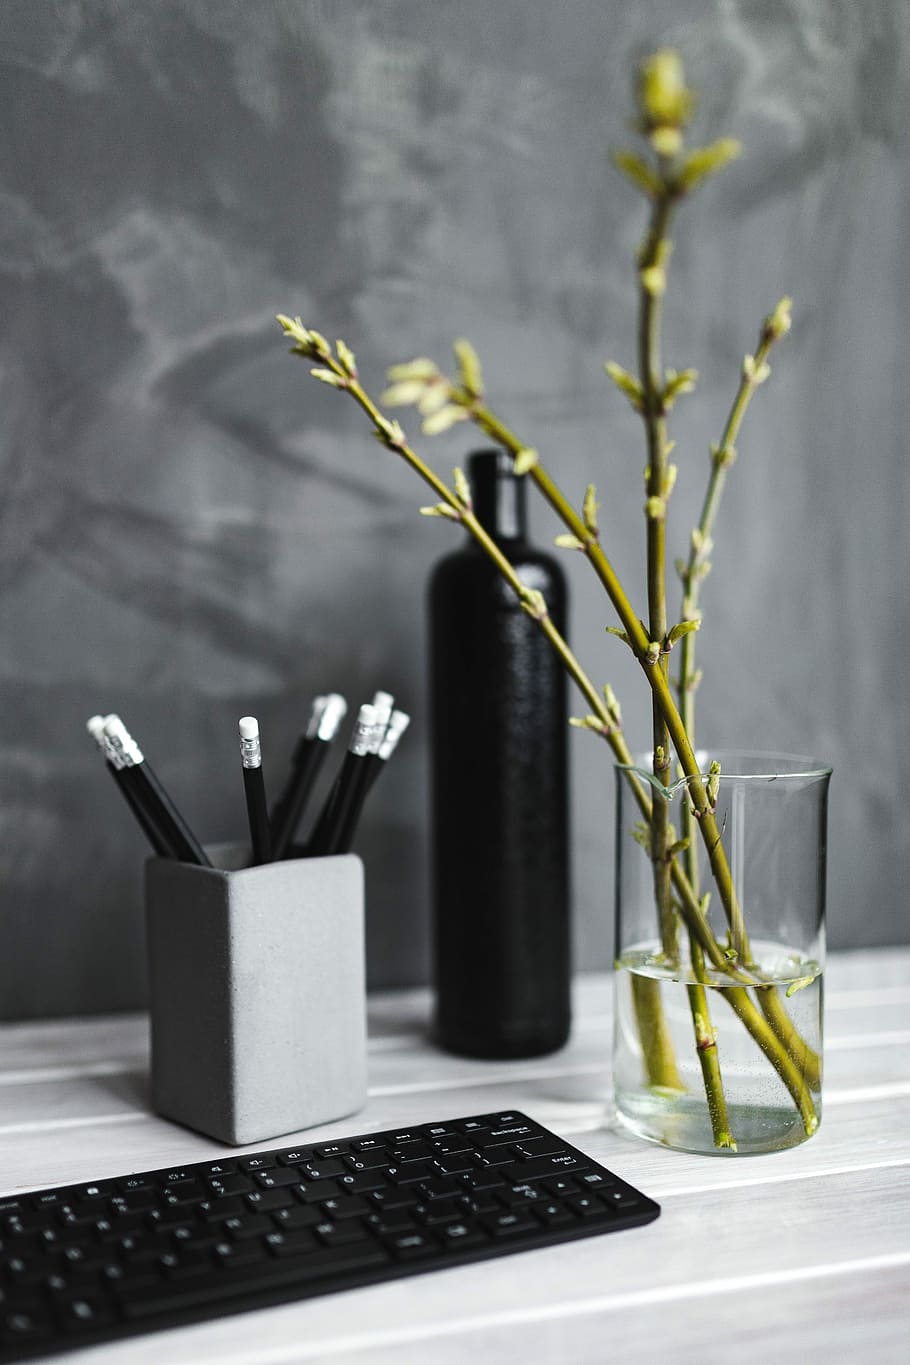 黒, キーボード, 鉛筆, 白, テーブル, ボトル, 植物, 人物なし, 室内, 花瓶